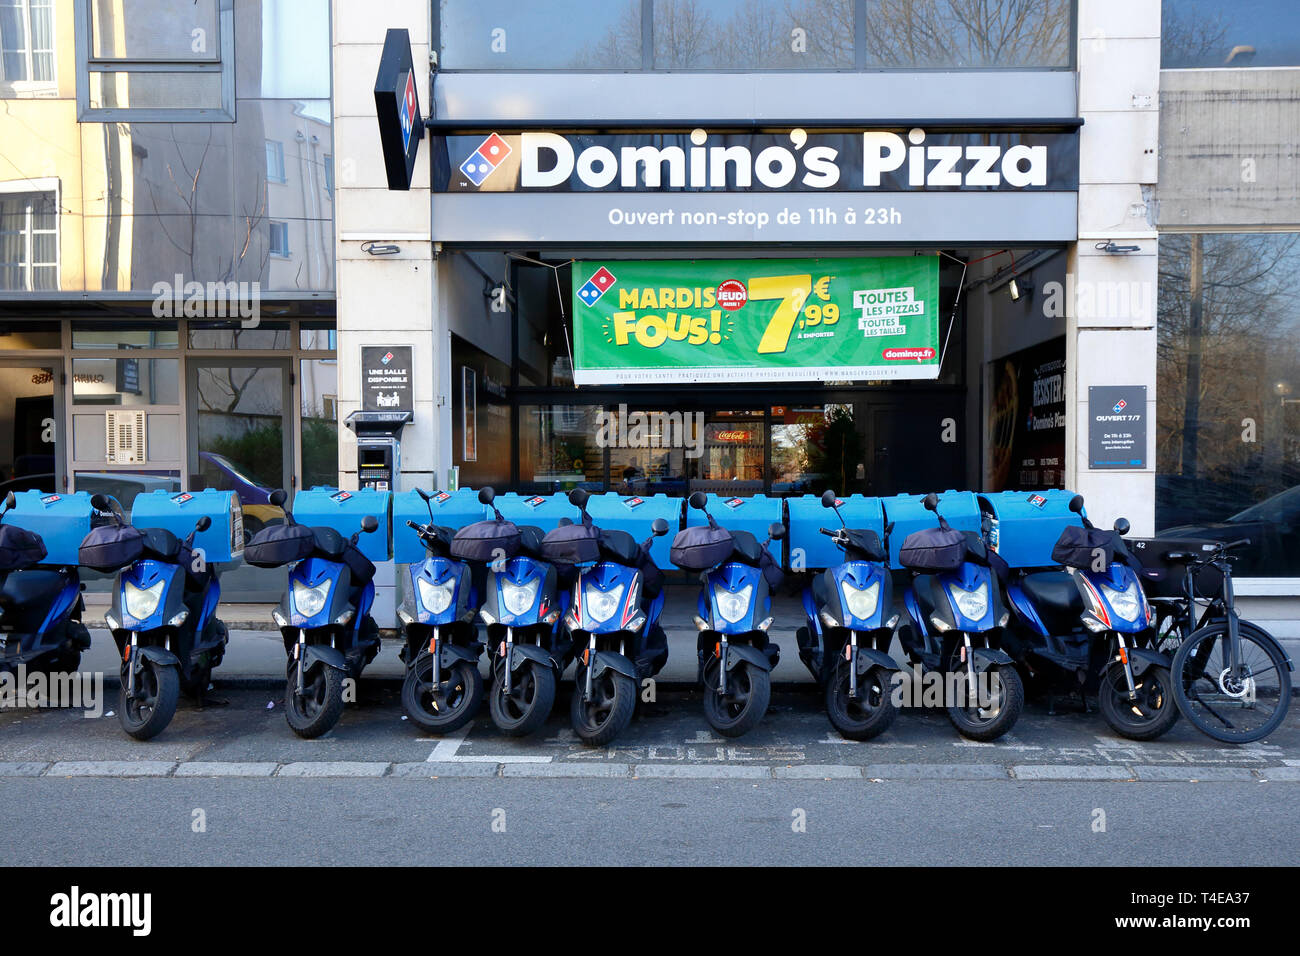 Domino's Pizza, 7 Rue de Margnolles, Caluire-et-Cuire, Lyon, Frankreich. Außenansicht eines Pizzaladens mit vielen Pizzalieferern draußen. Stockfoto